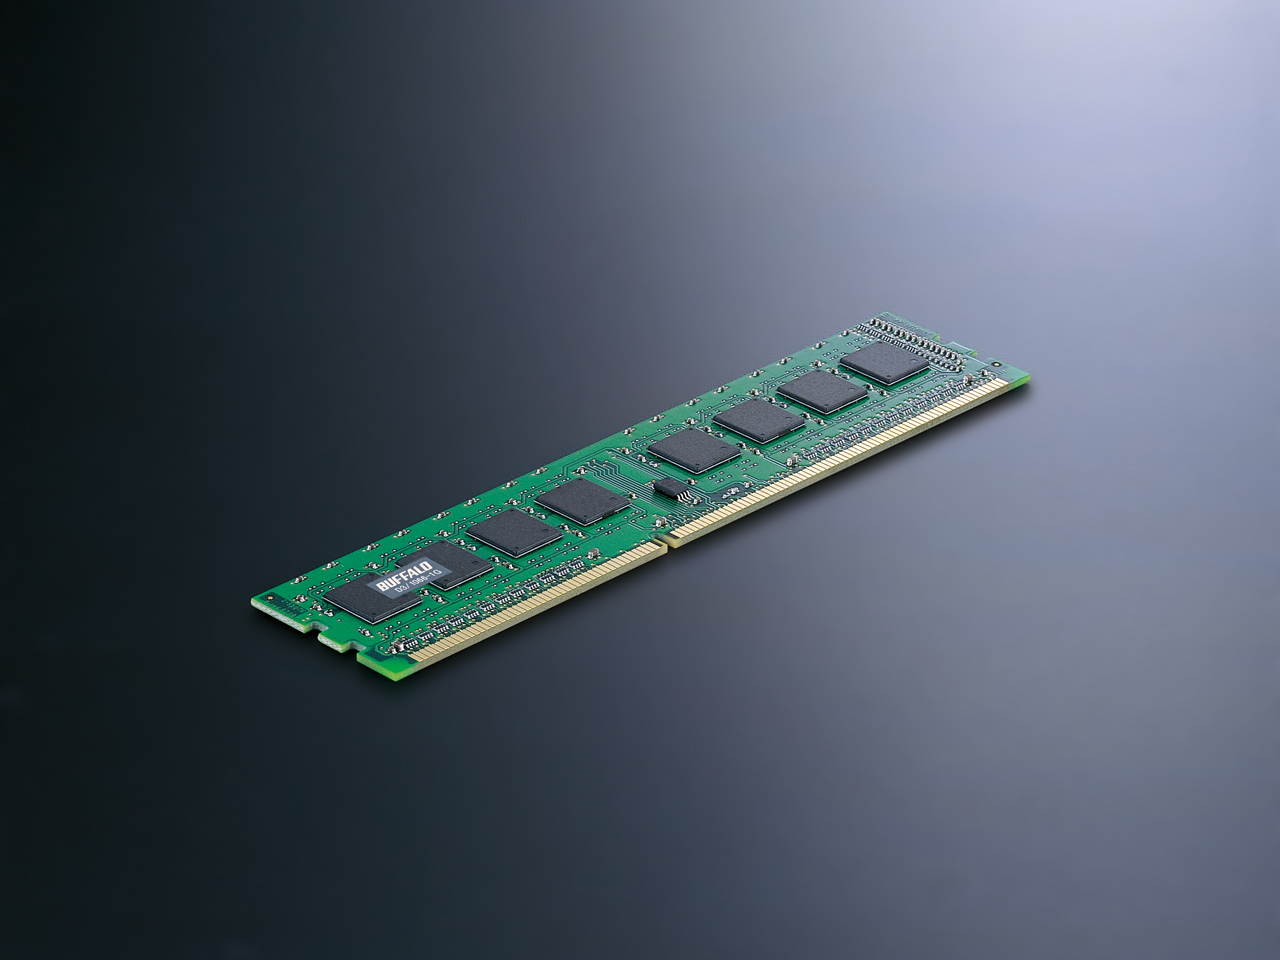 Immagine pubblicata in relazione al seguente contenuto: Buffalo lancia le prime DIMM DDR3 a 1066MHz e 240-pin | Nome immagine: news4881_2.jpg